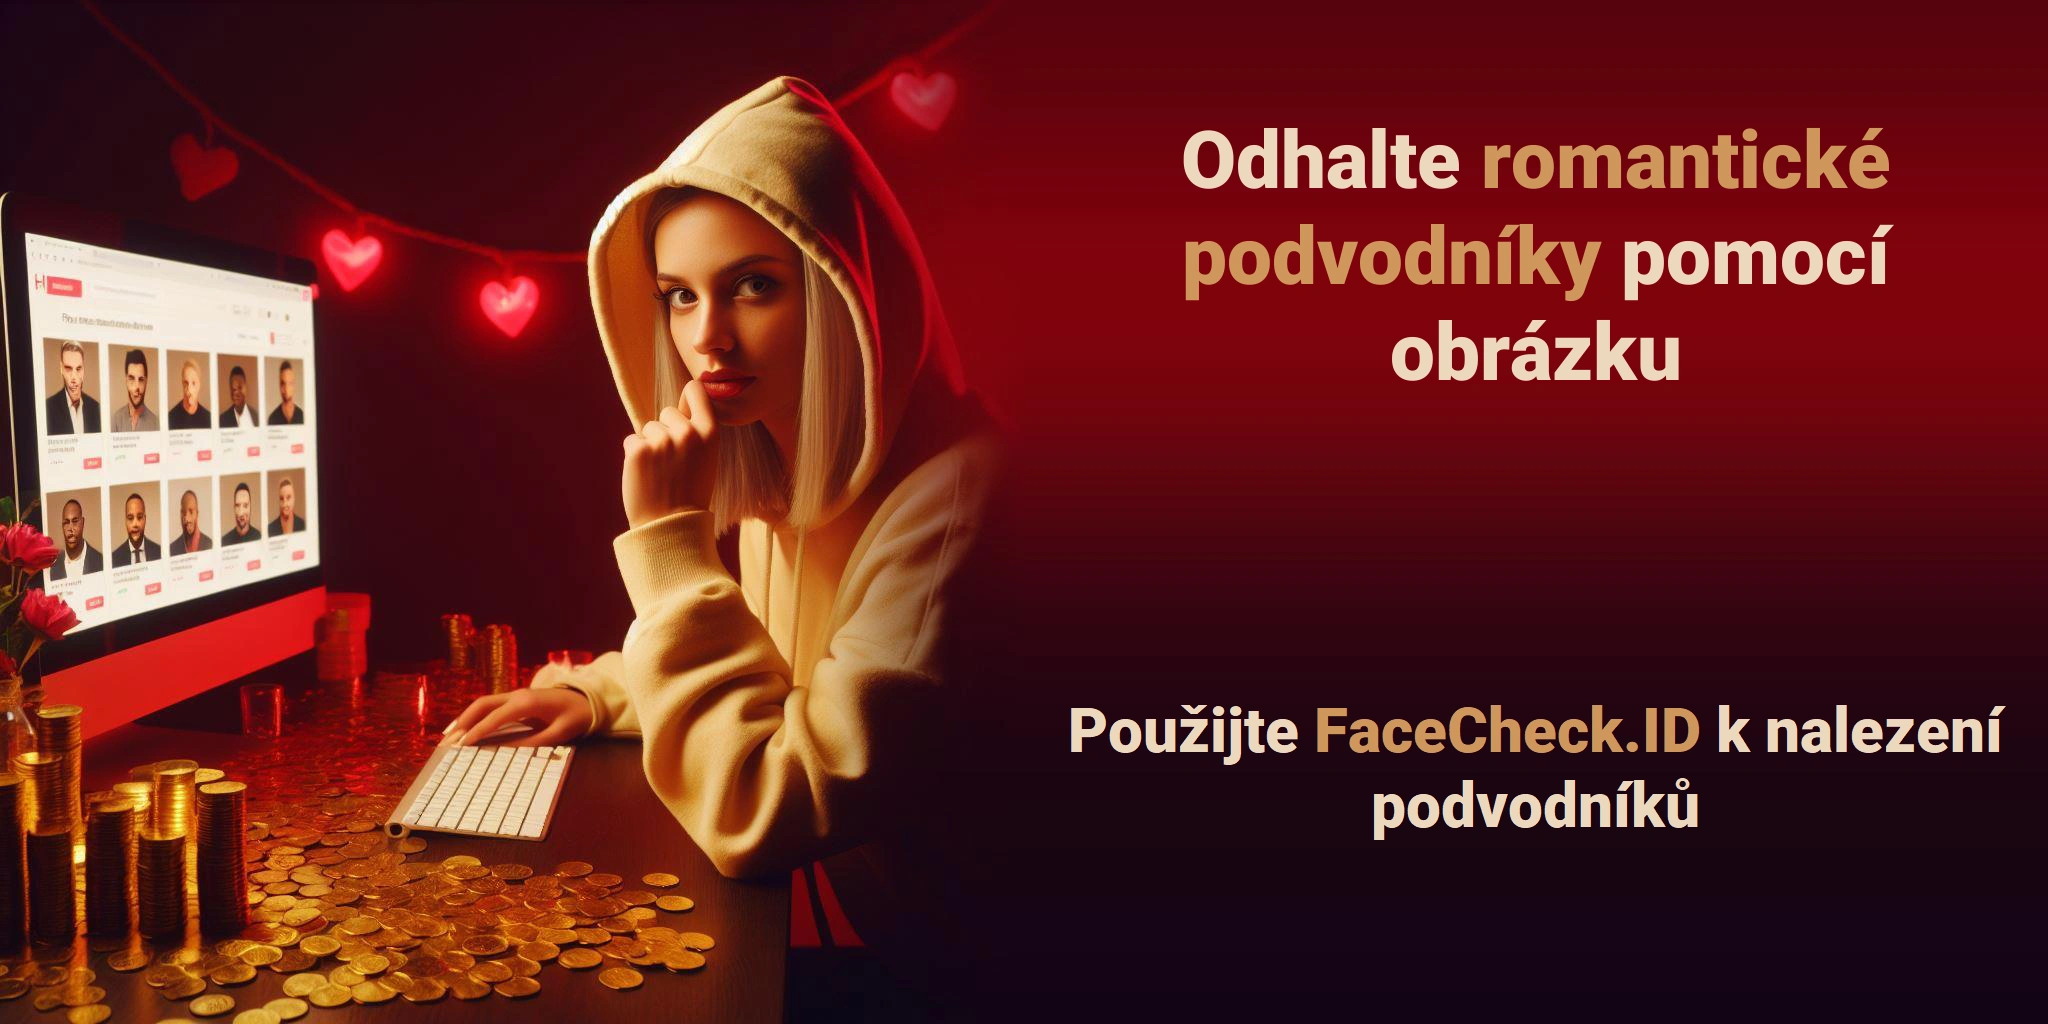 Odhalte romantické podvodníky pomocí obrázku Použijte FaceCheck.ID k nalezení podvodníků